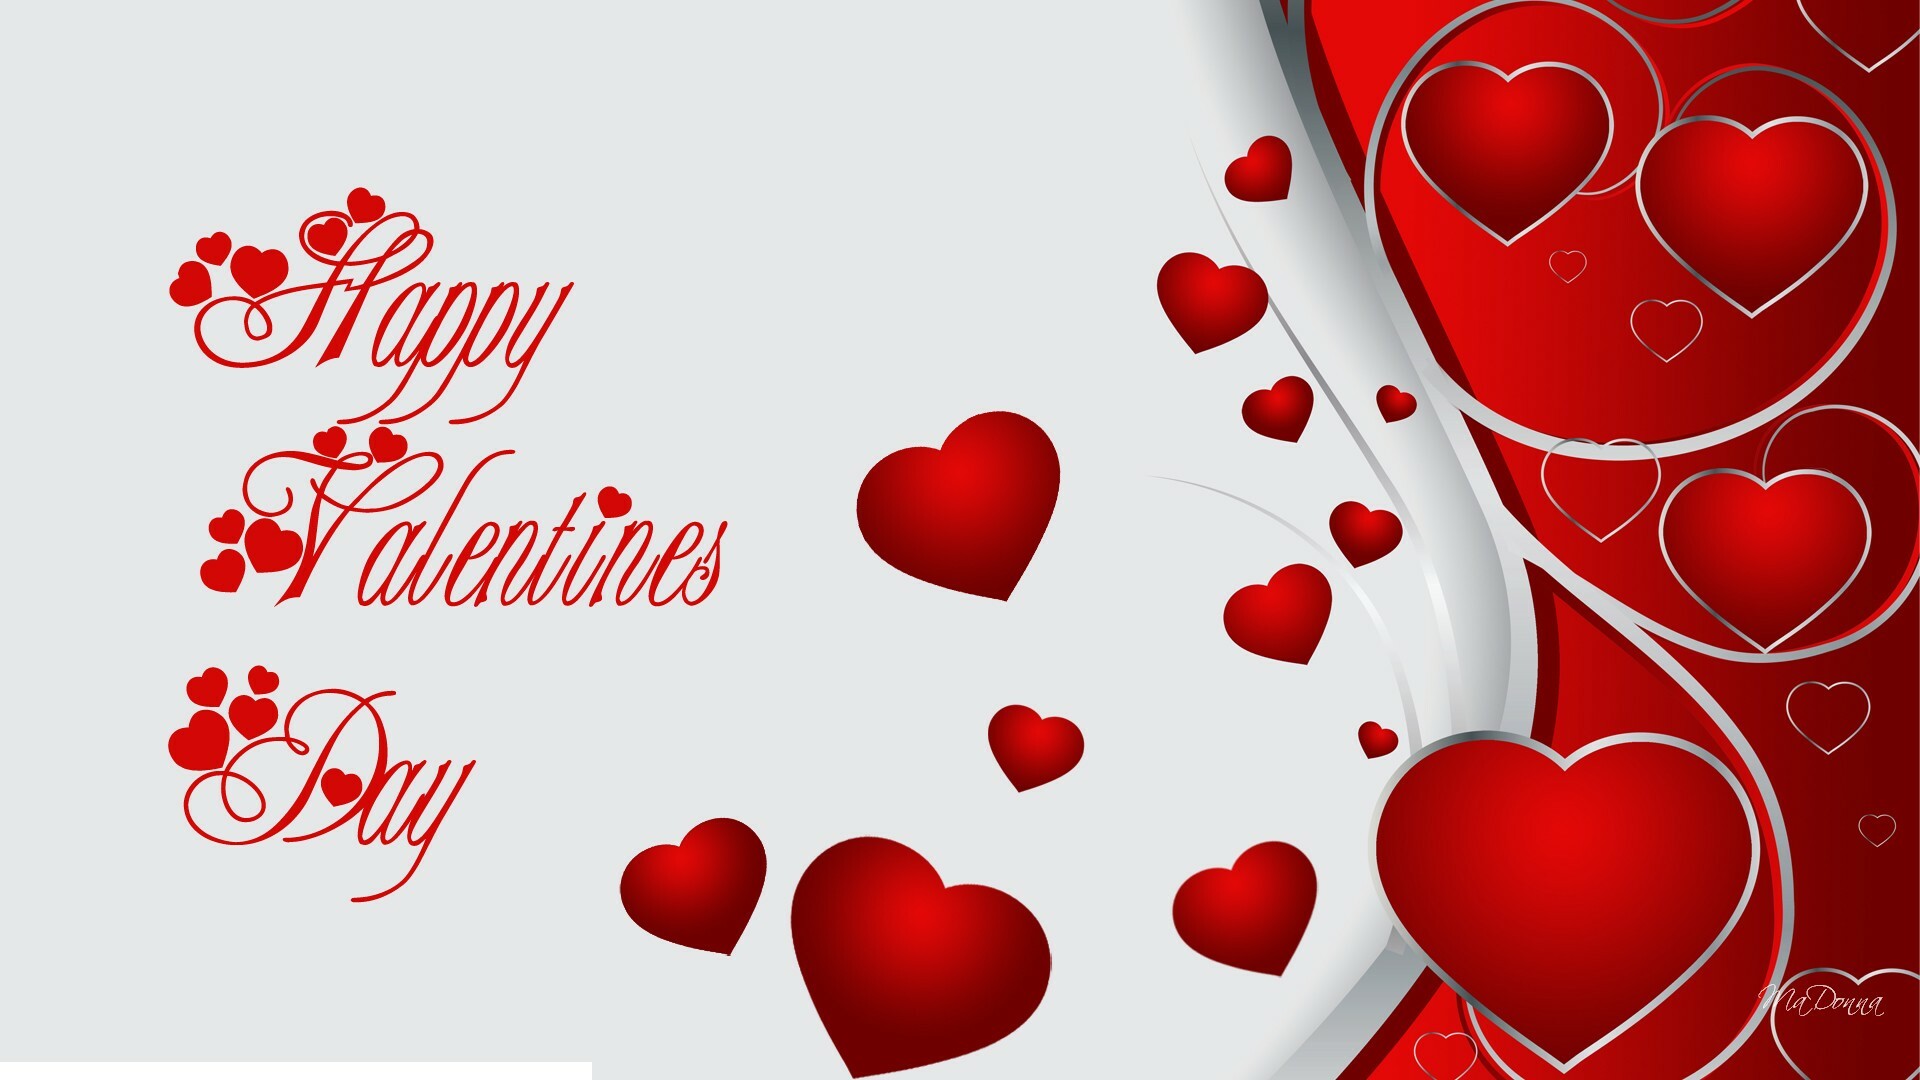 happy valentine day messeges